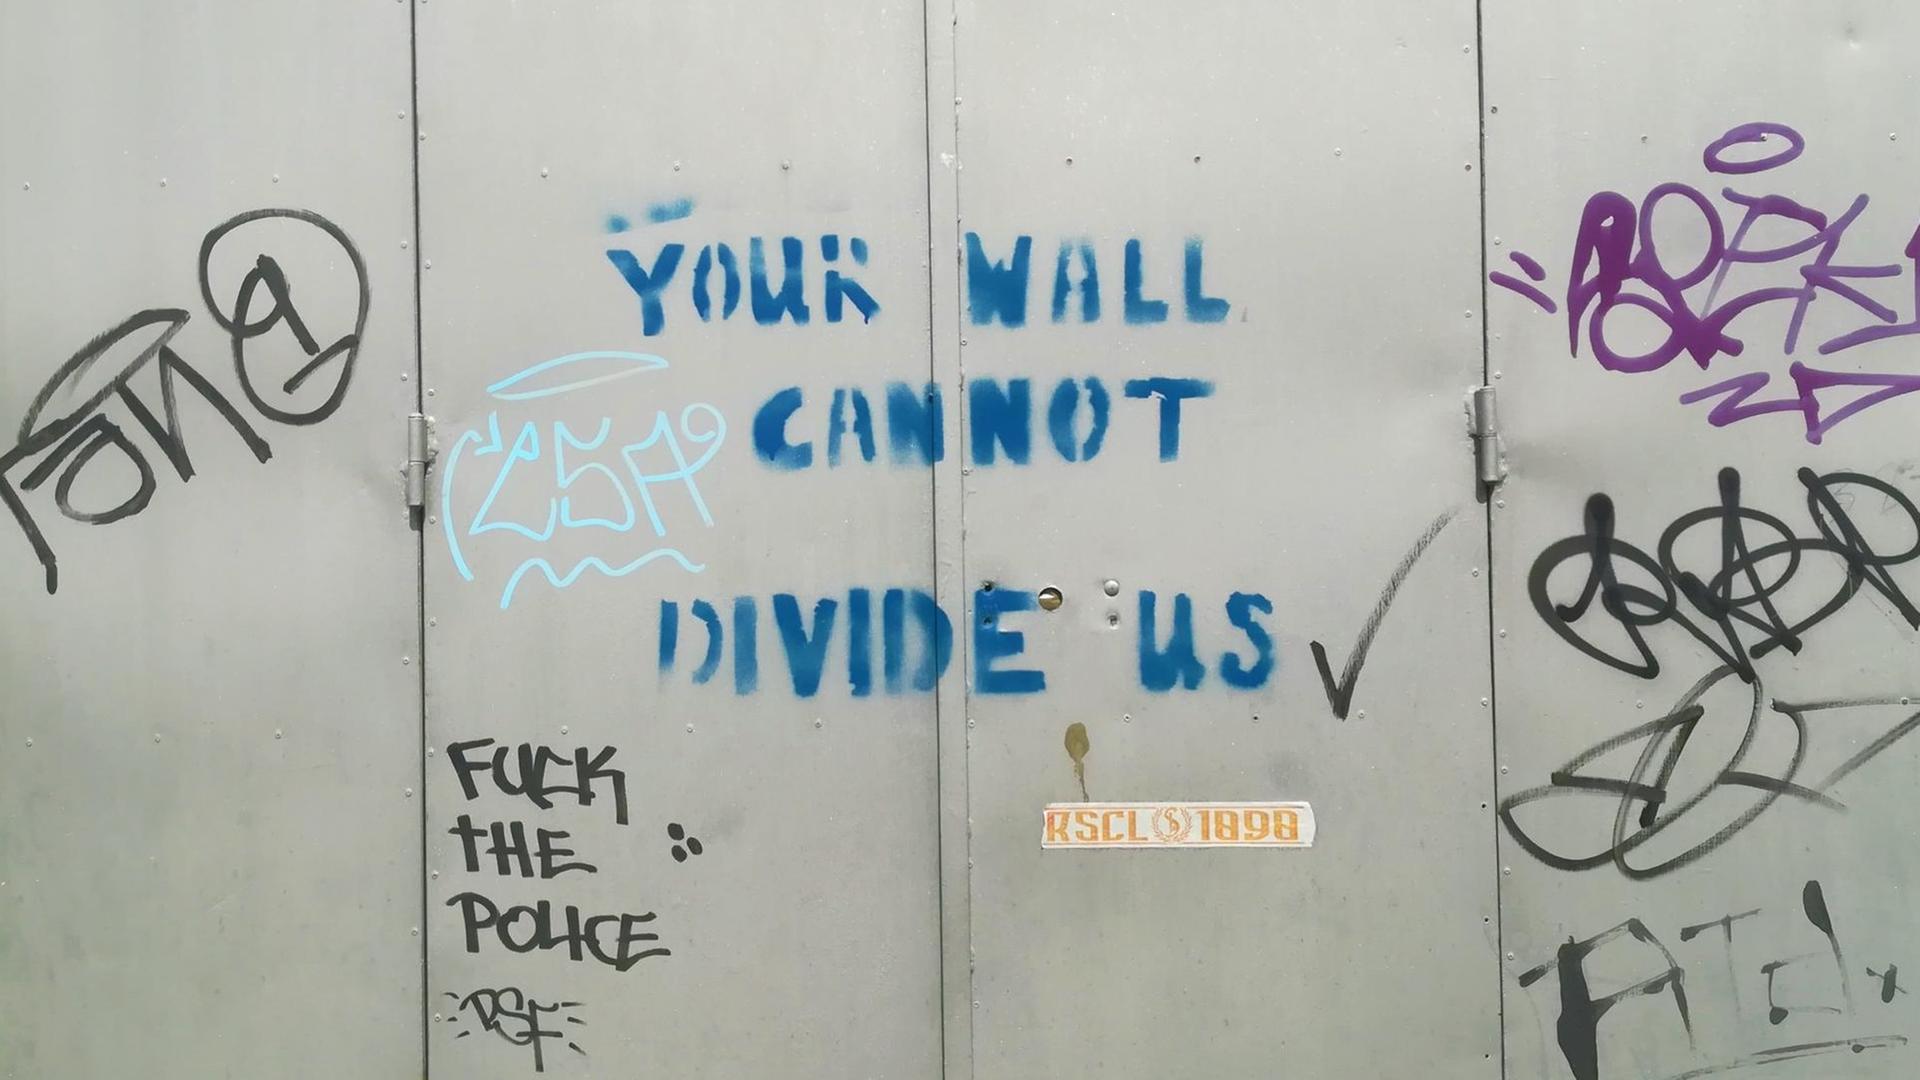 Schriftzug "Your Wall Cannot Divide US" - "Eure Mauer kann uns nicht trennen" - an der Grenze zwischen Nord- und Südzypern, die durch die Stadt Nicosia verläuft